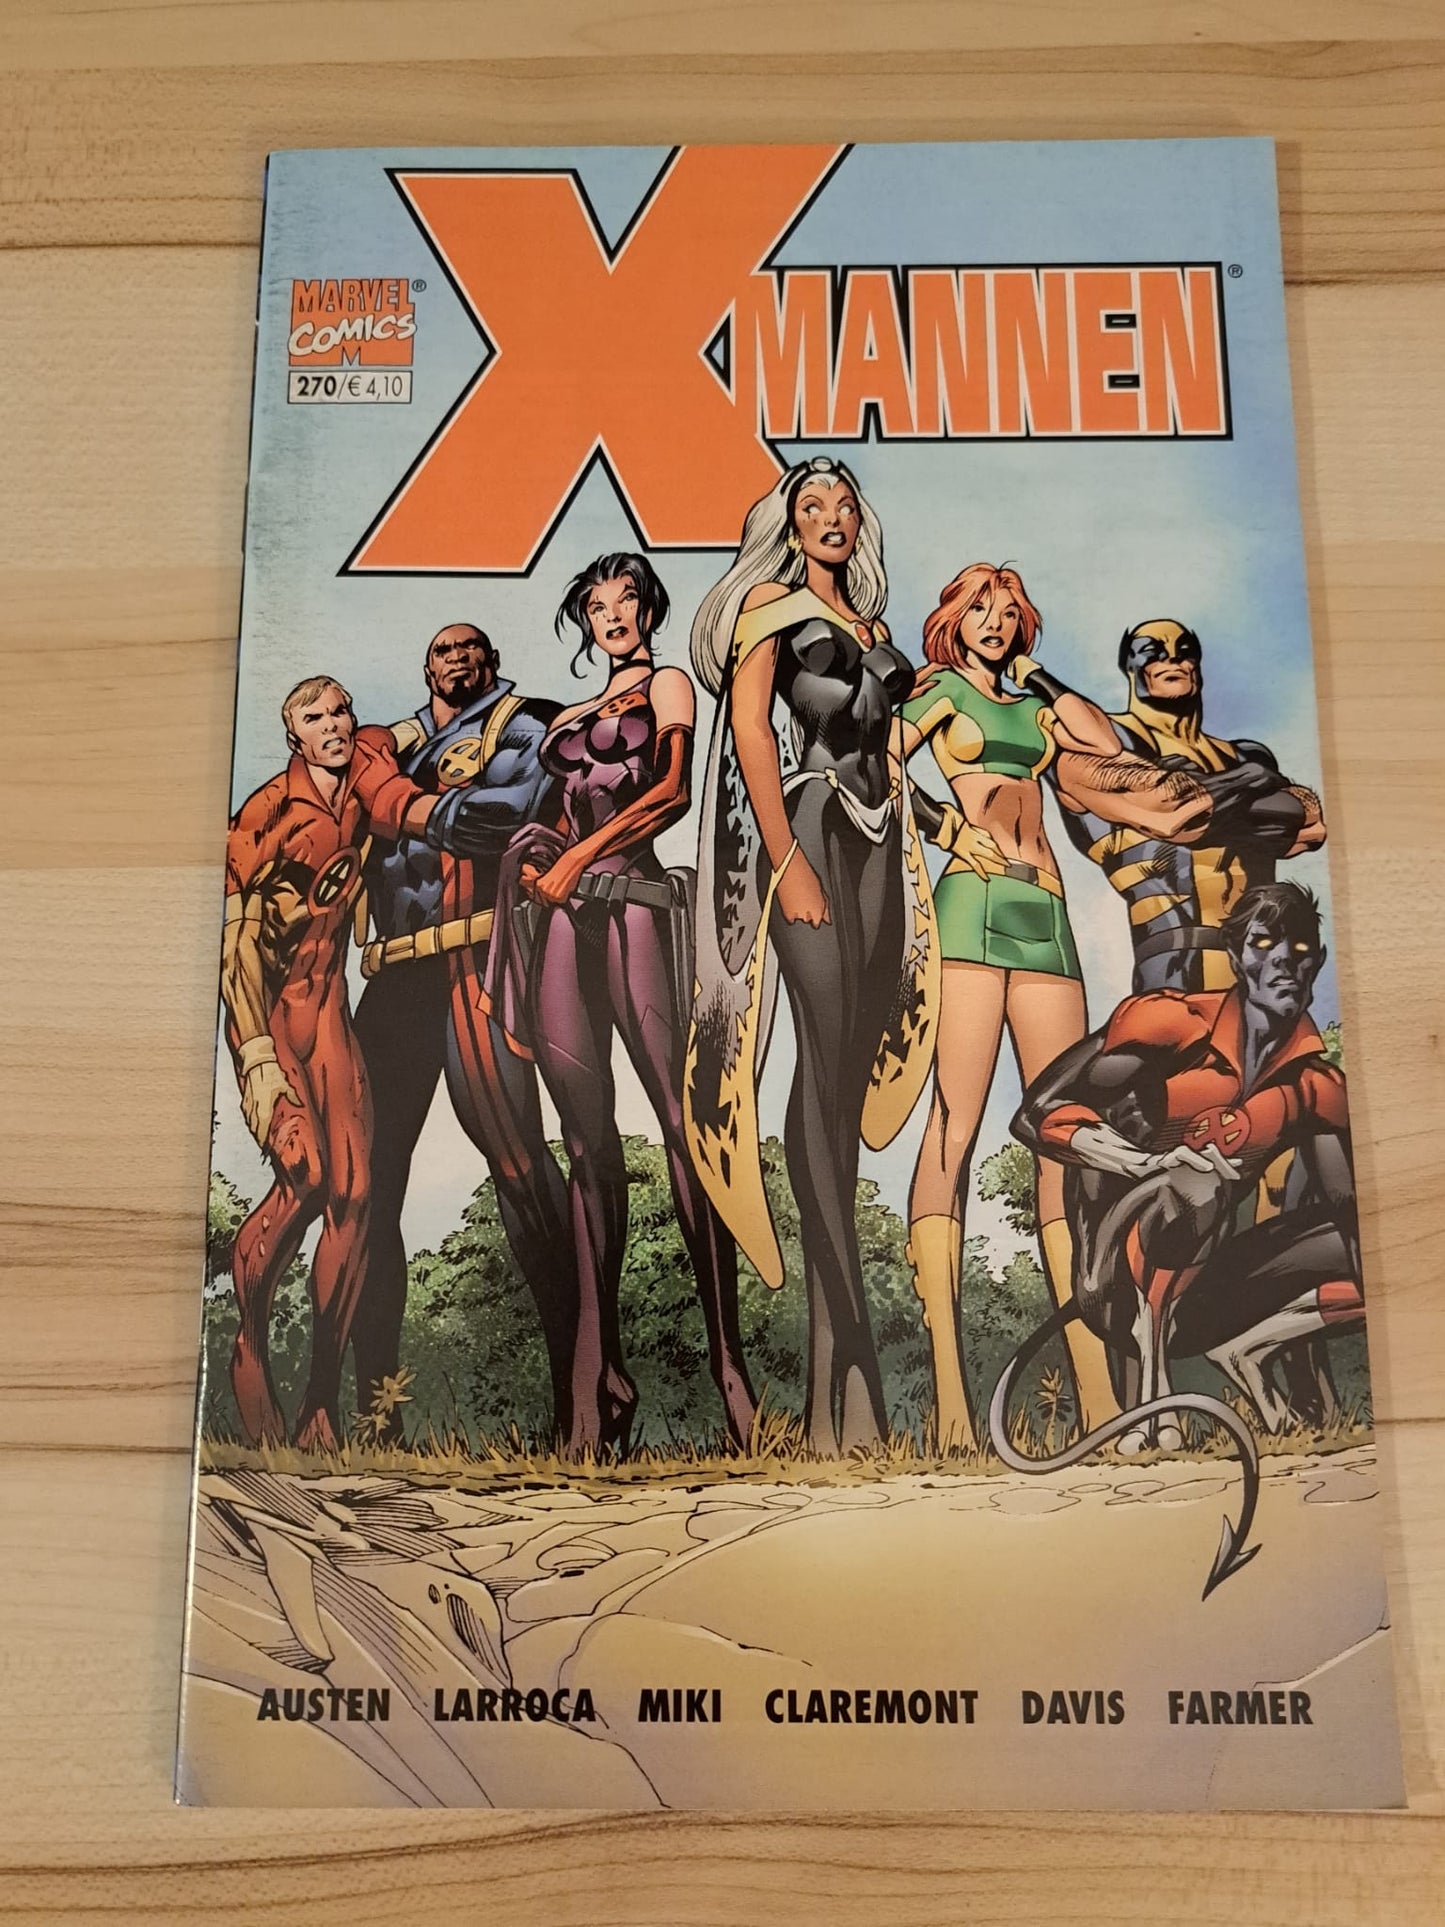 X-mannen #270